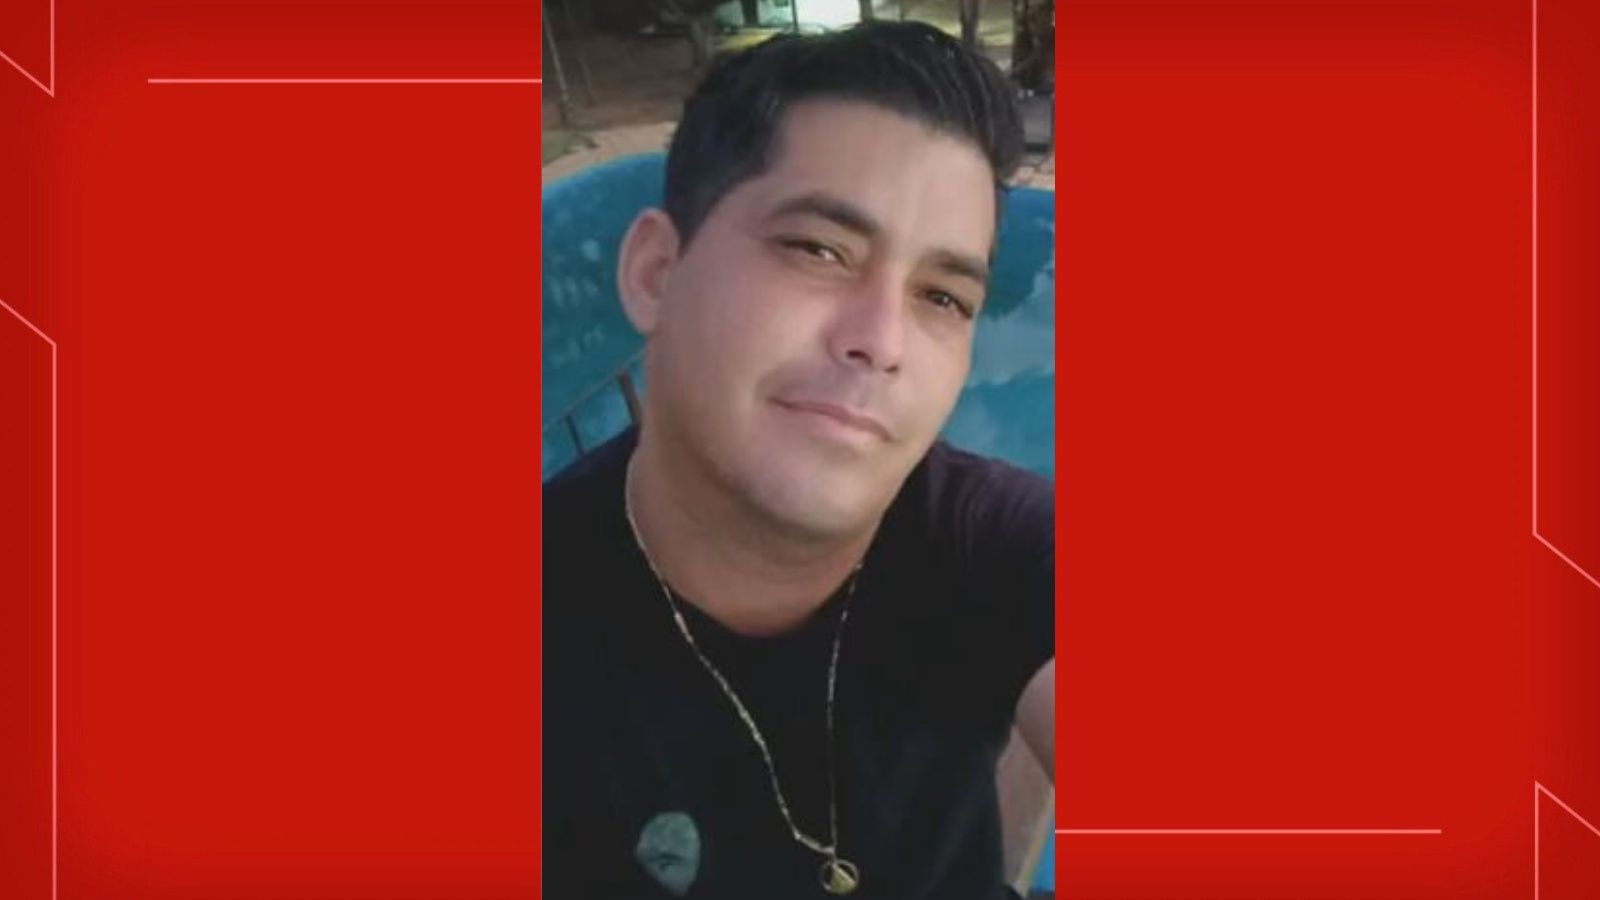 Policial penal desaparecido fez último contato com família na quarta-feira (29), diz PCDF; carro foi encontrado carbonizado na terça